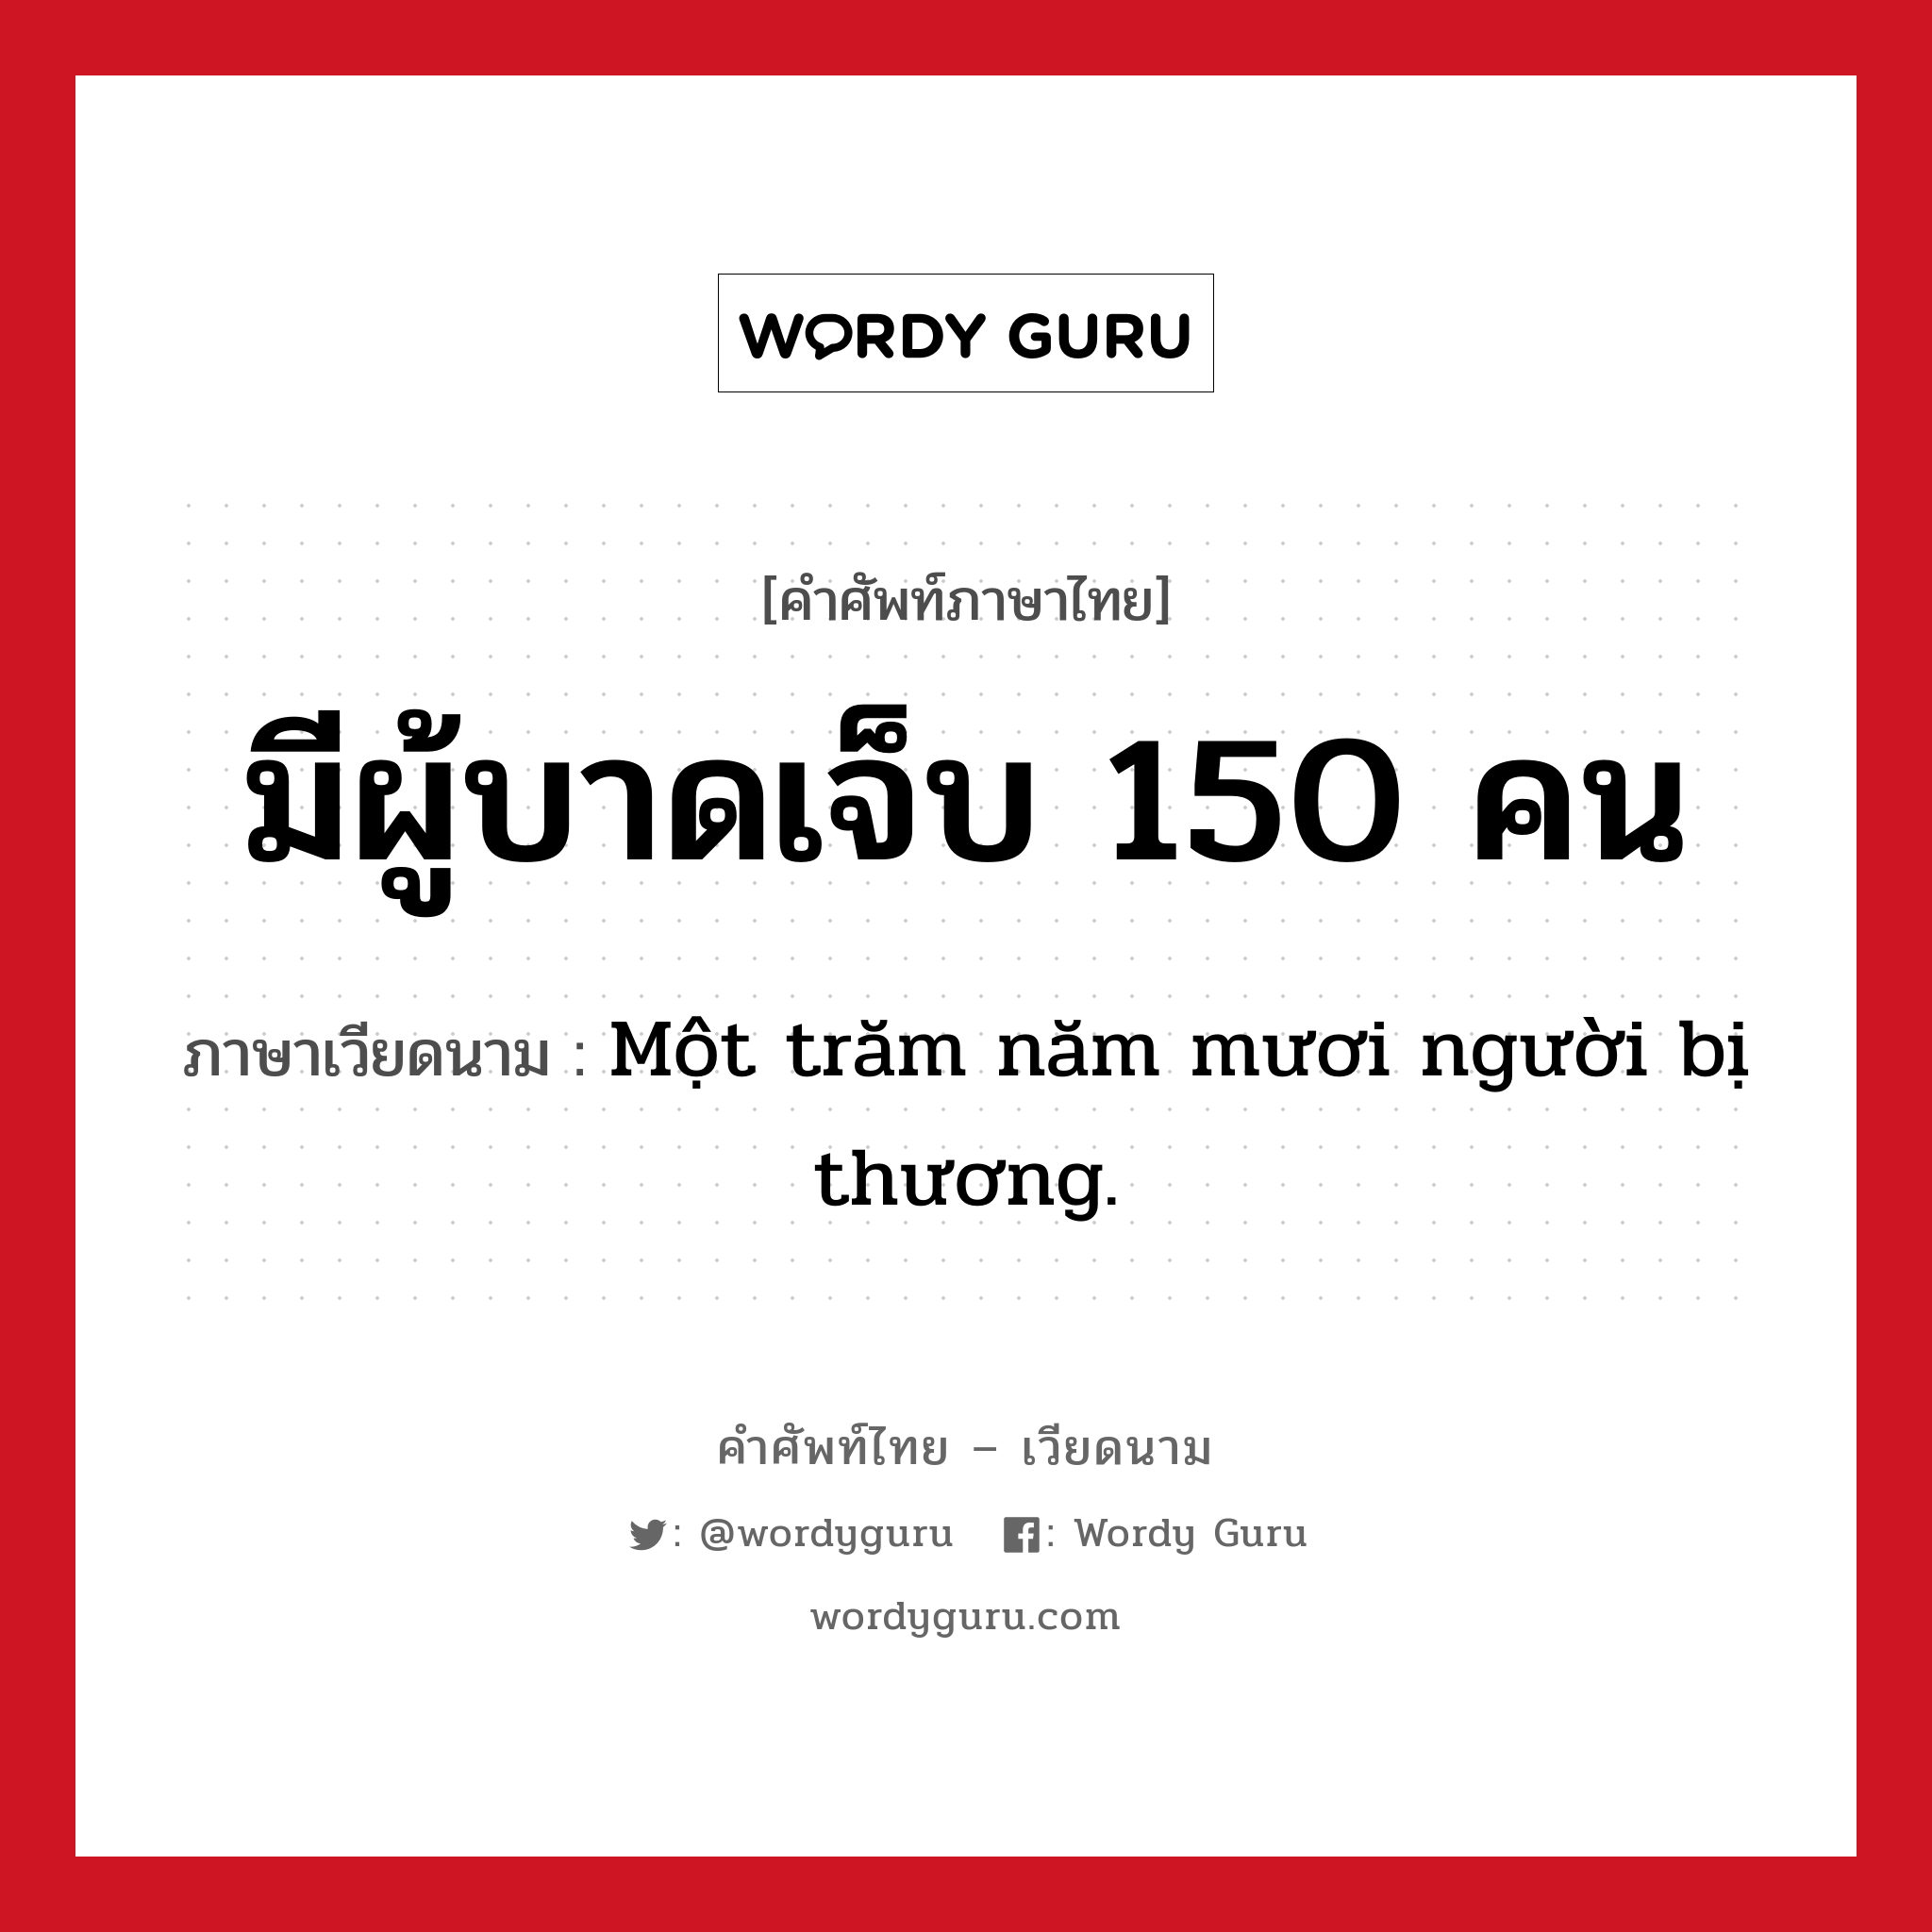 Một trăm năm mươi người bị thương. ภาษาไทย?, คำศัพท์ภาษาไทย - เวียดนาม Một trăm năm mươi người bị thương. ภาษาเวียดนาม มีผู้บาดเจ็บ 150 คน หมวด สภาพอากาศ หมวด สภาพอากาศ